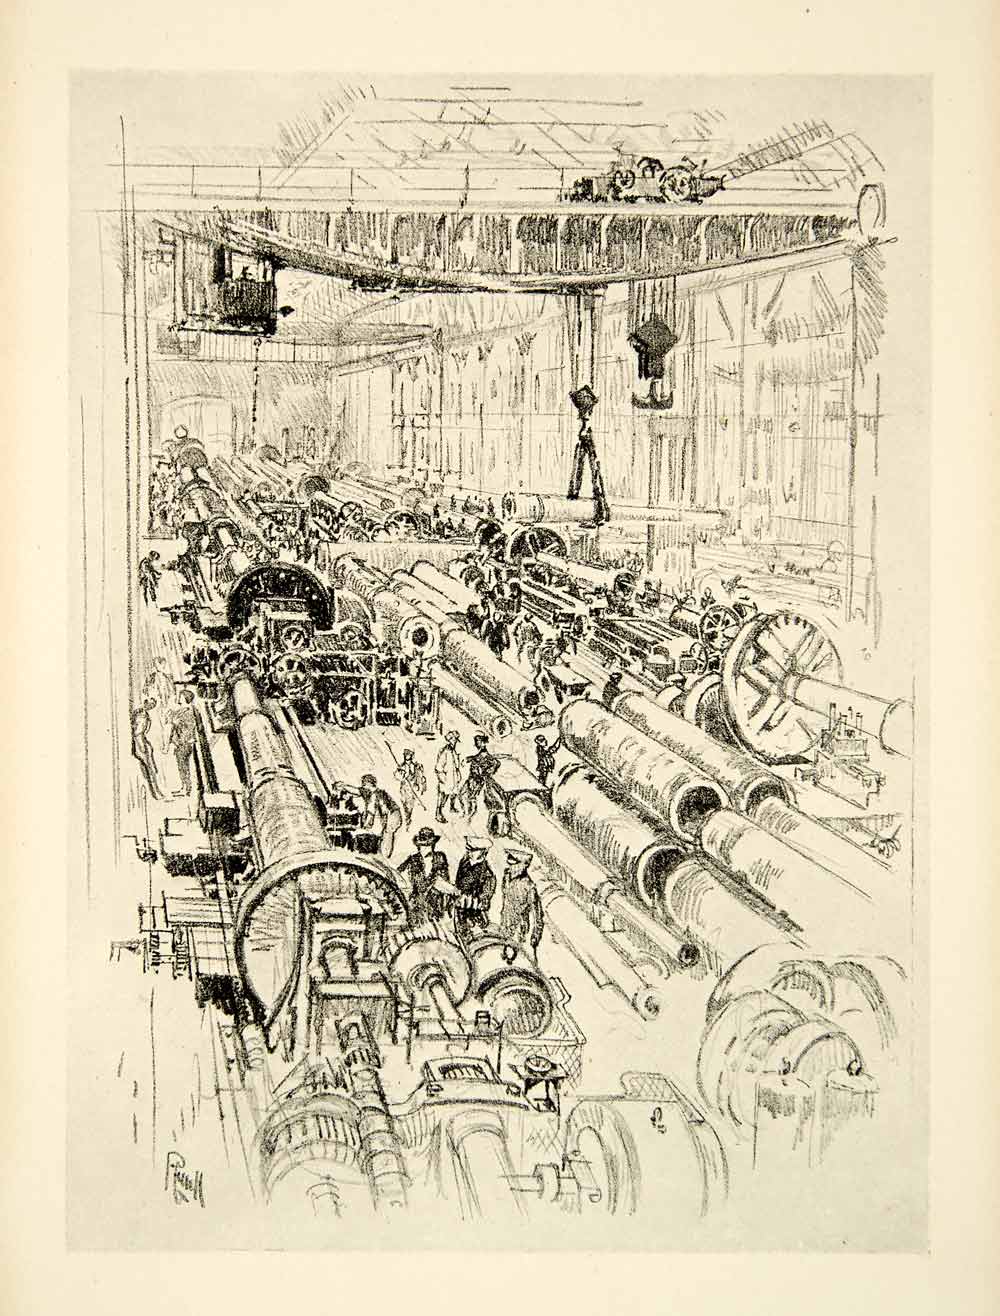 1917 Print Gun Shop Joseph Pennell Factory Industrial England World War I XDJ1